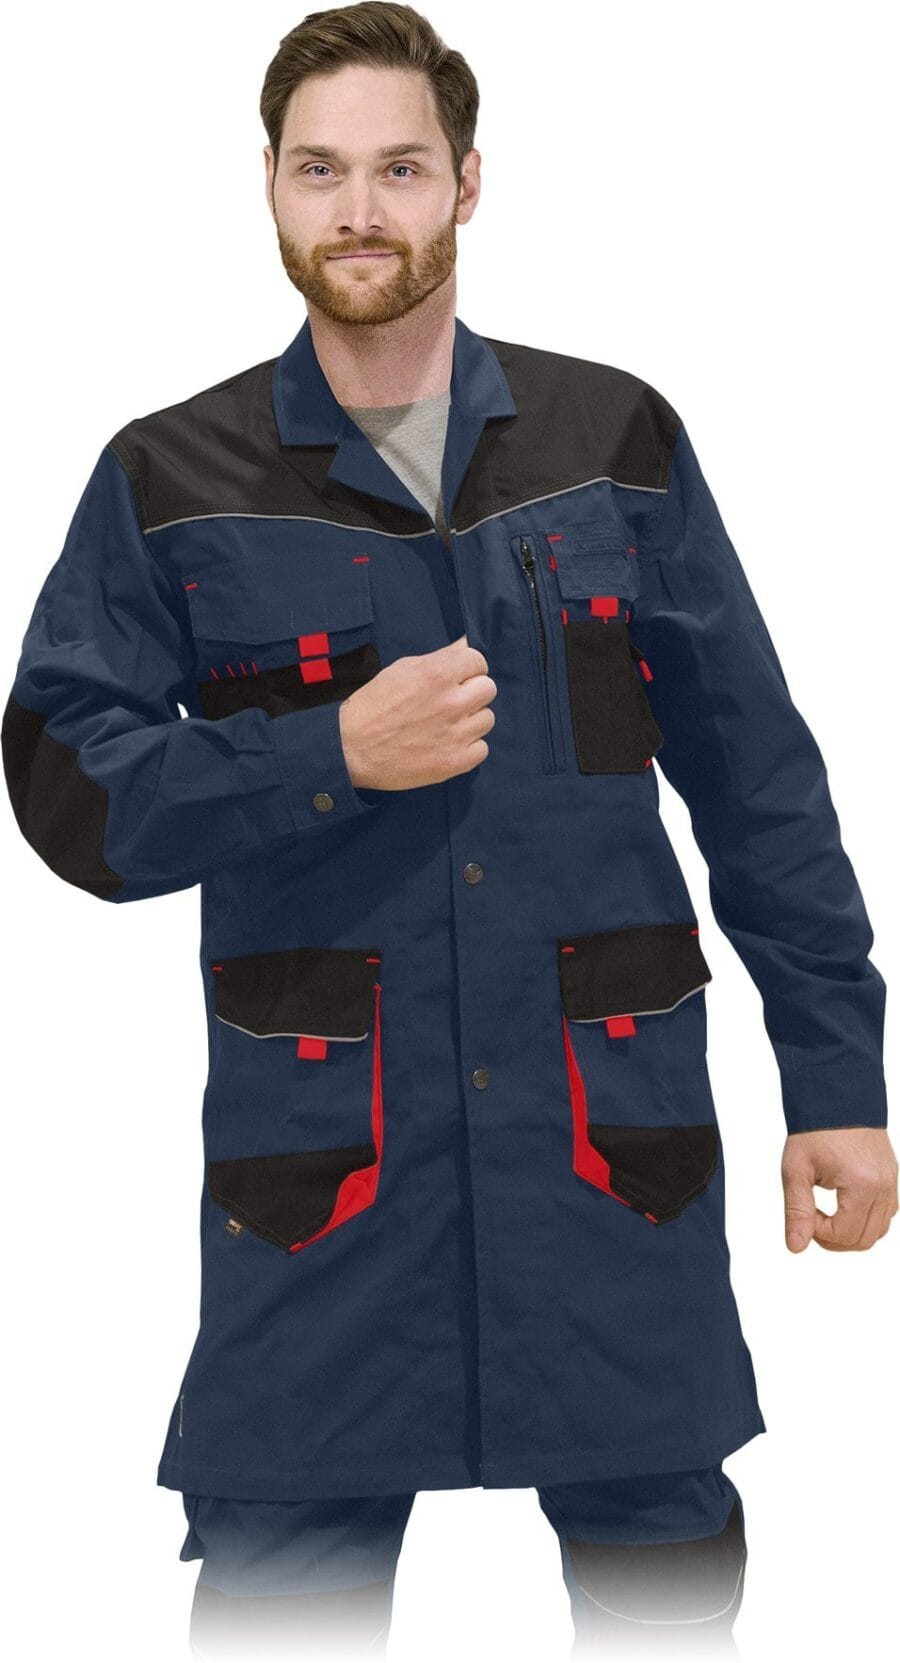 Pracovný plášť montérkový PROFI NAVY RED 2.0